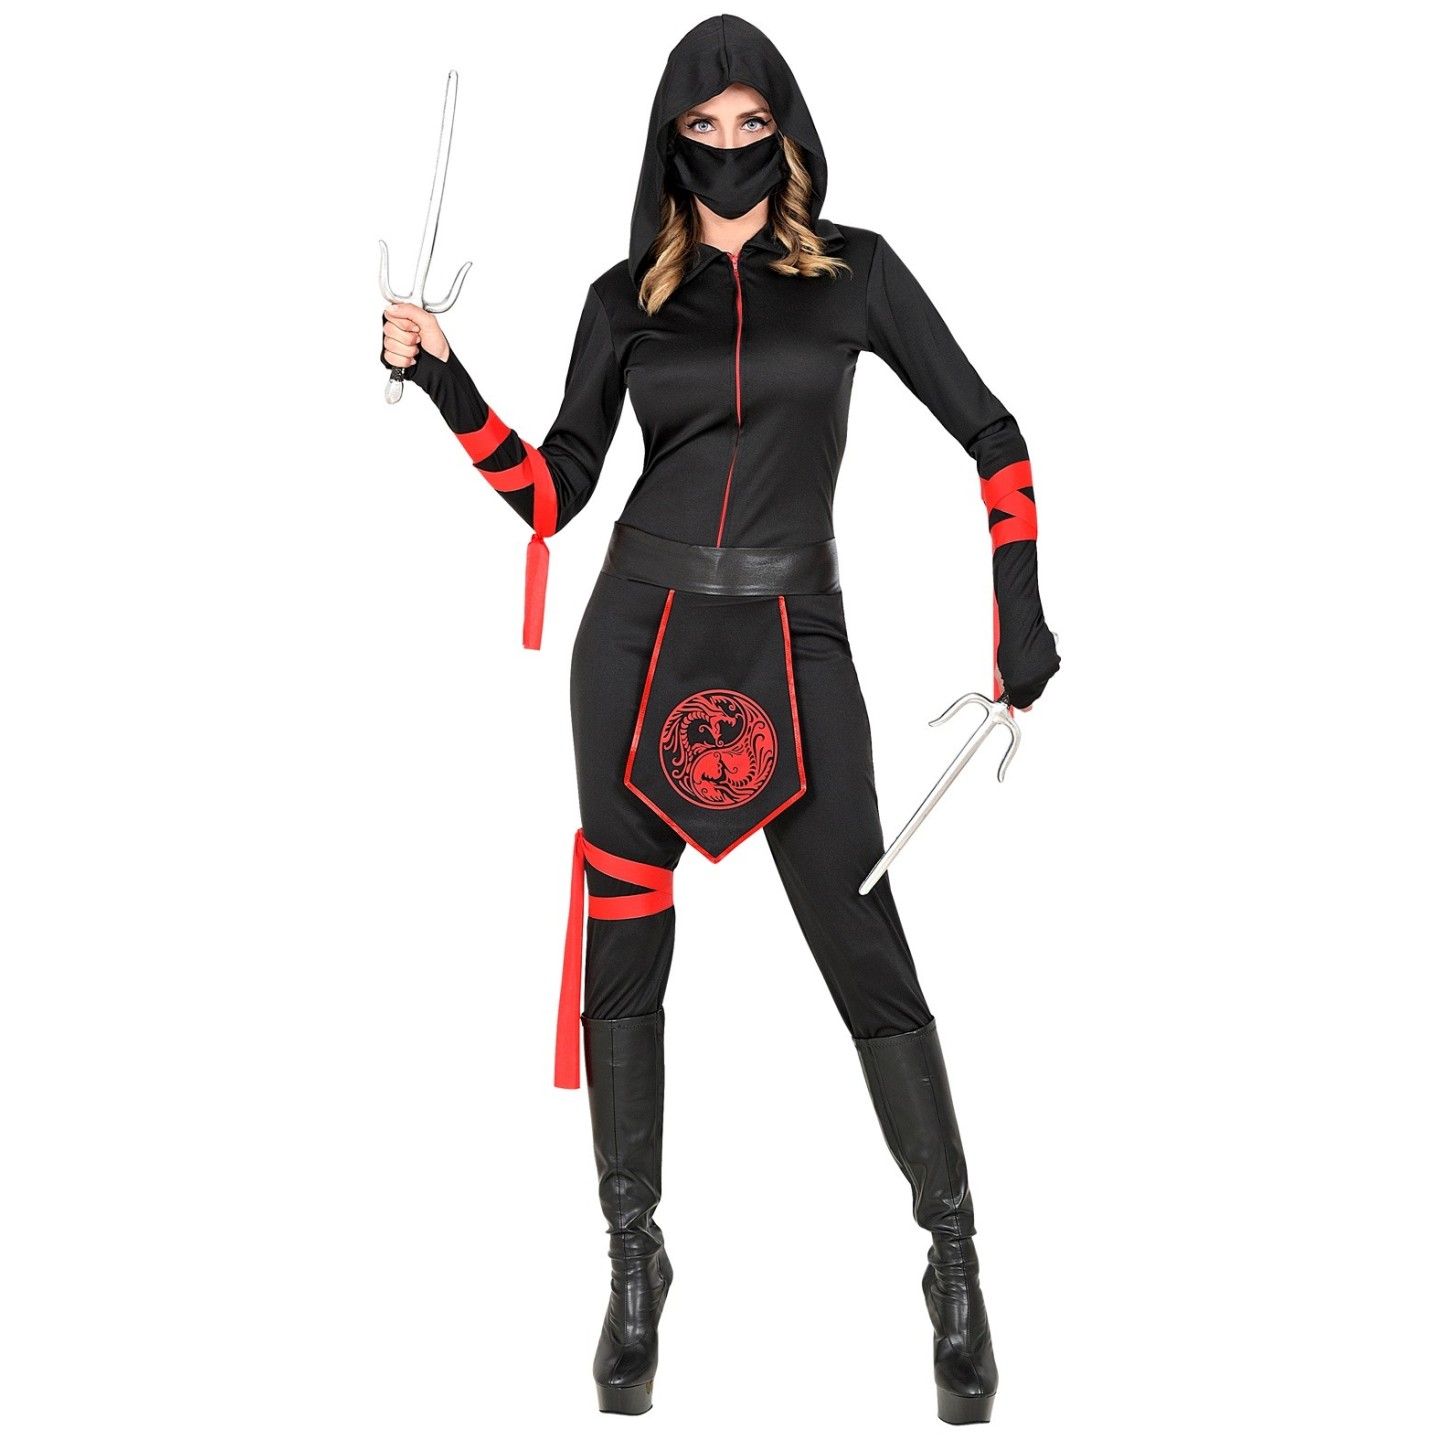 Ninja kostuum dames zwart rood Jokershop.be - Verkleedwinkel